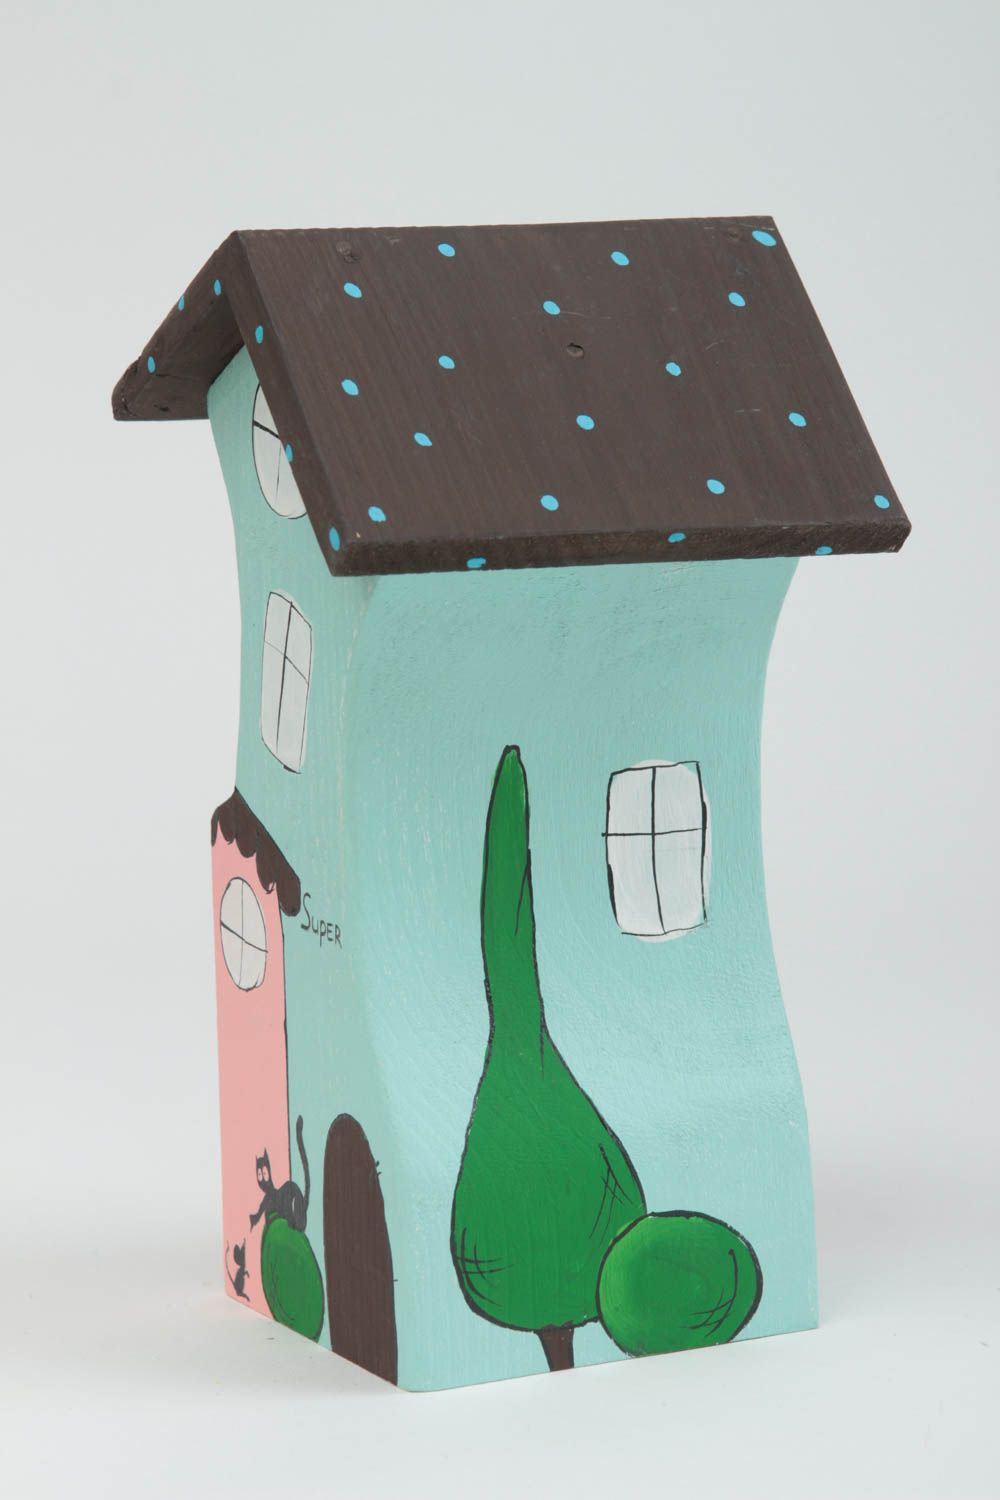 Фигурка из дерева для декора домик ручной работы из сосны голубой розовый кот фото 2